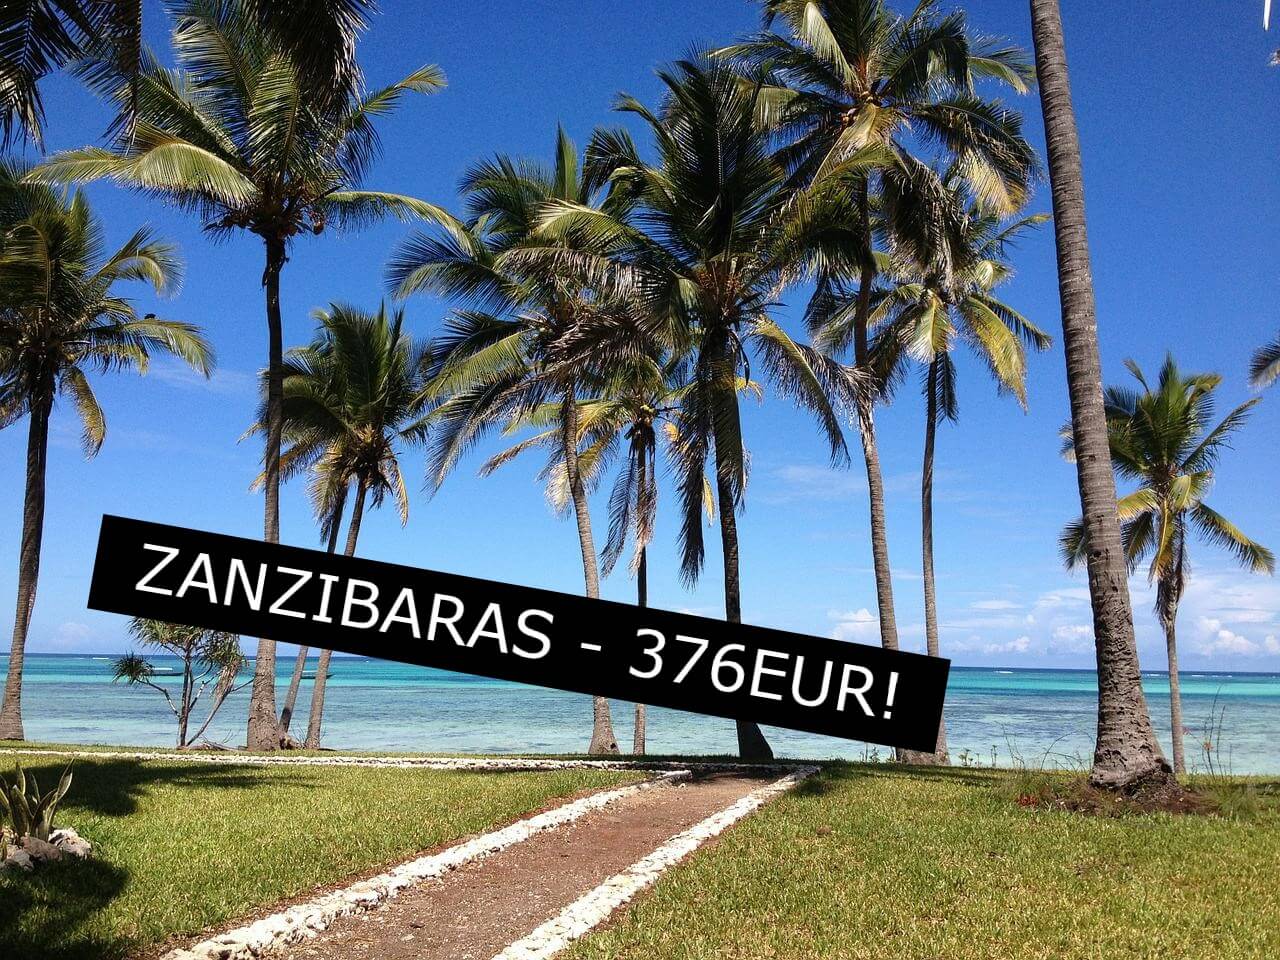 Skrendam pigiai į Zanzibarą? Pigūs skrydžiai iš Vilniaus į Zanzibarą nuo 376 Eur į abi puses!